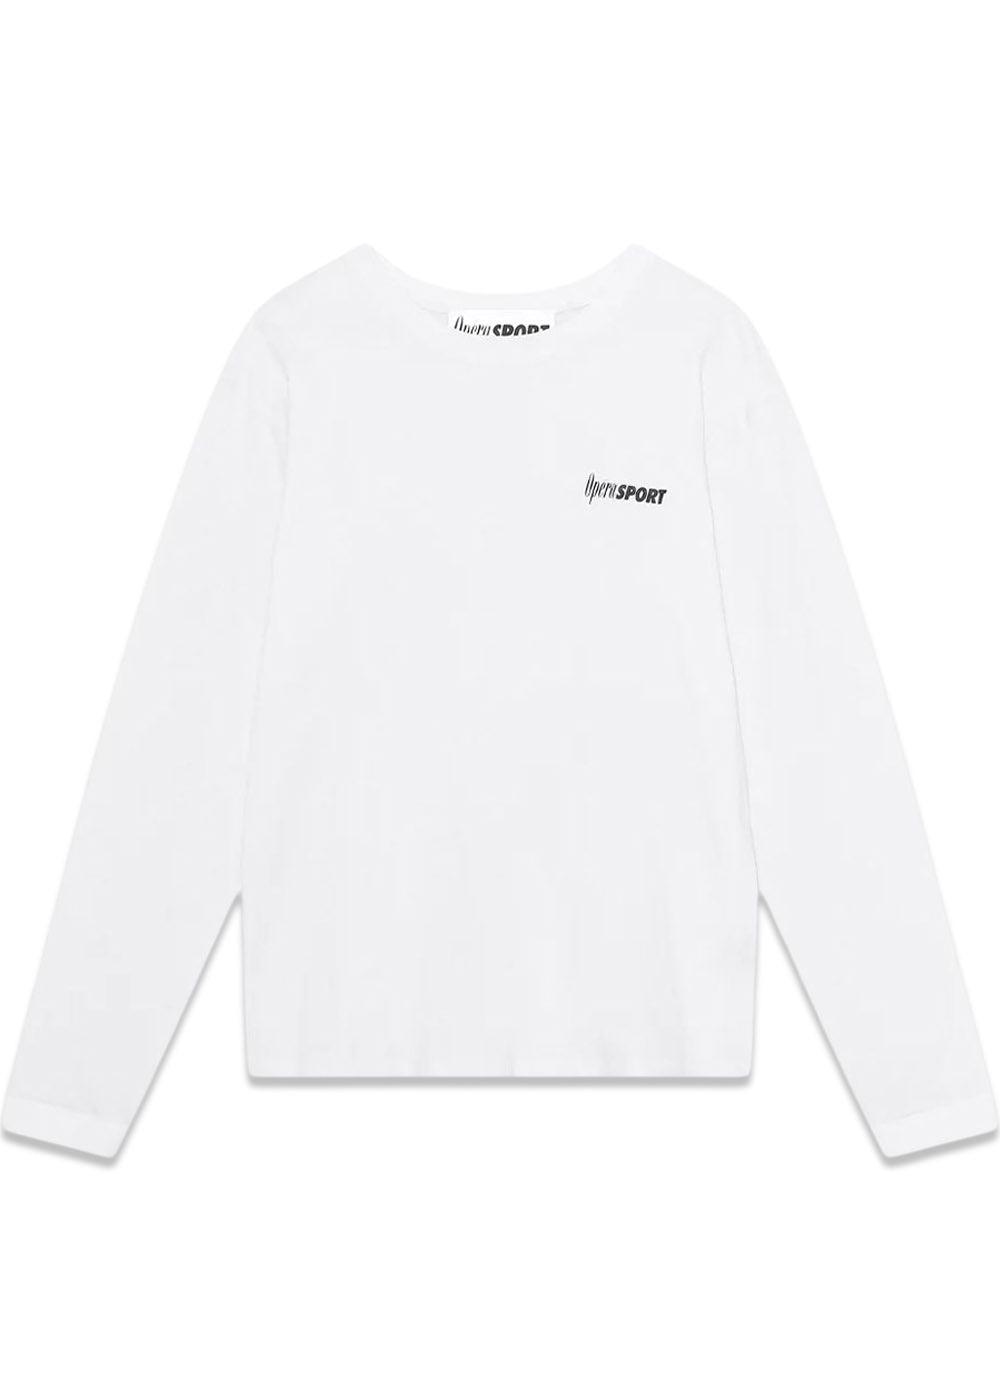 OpéraSPORT's CLAUDETTE UNISEX T-SHIRT - White. Køb t-shirts her.